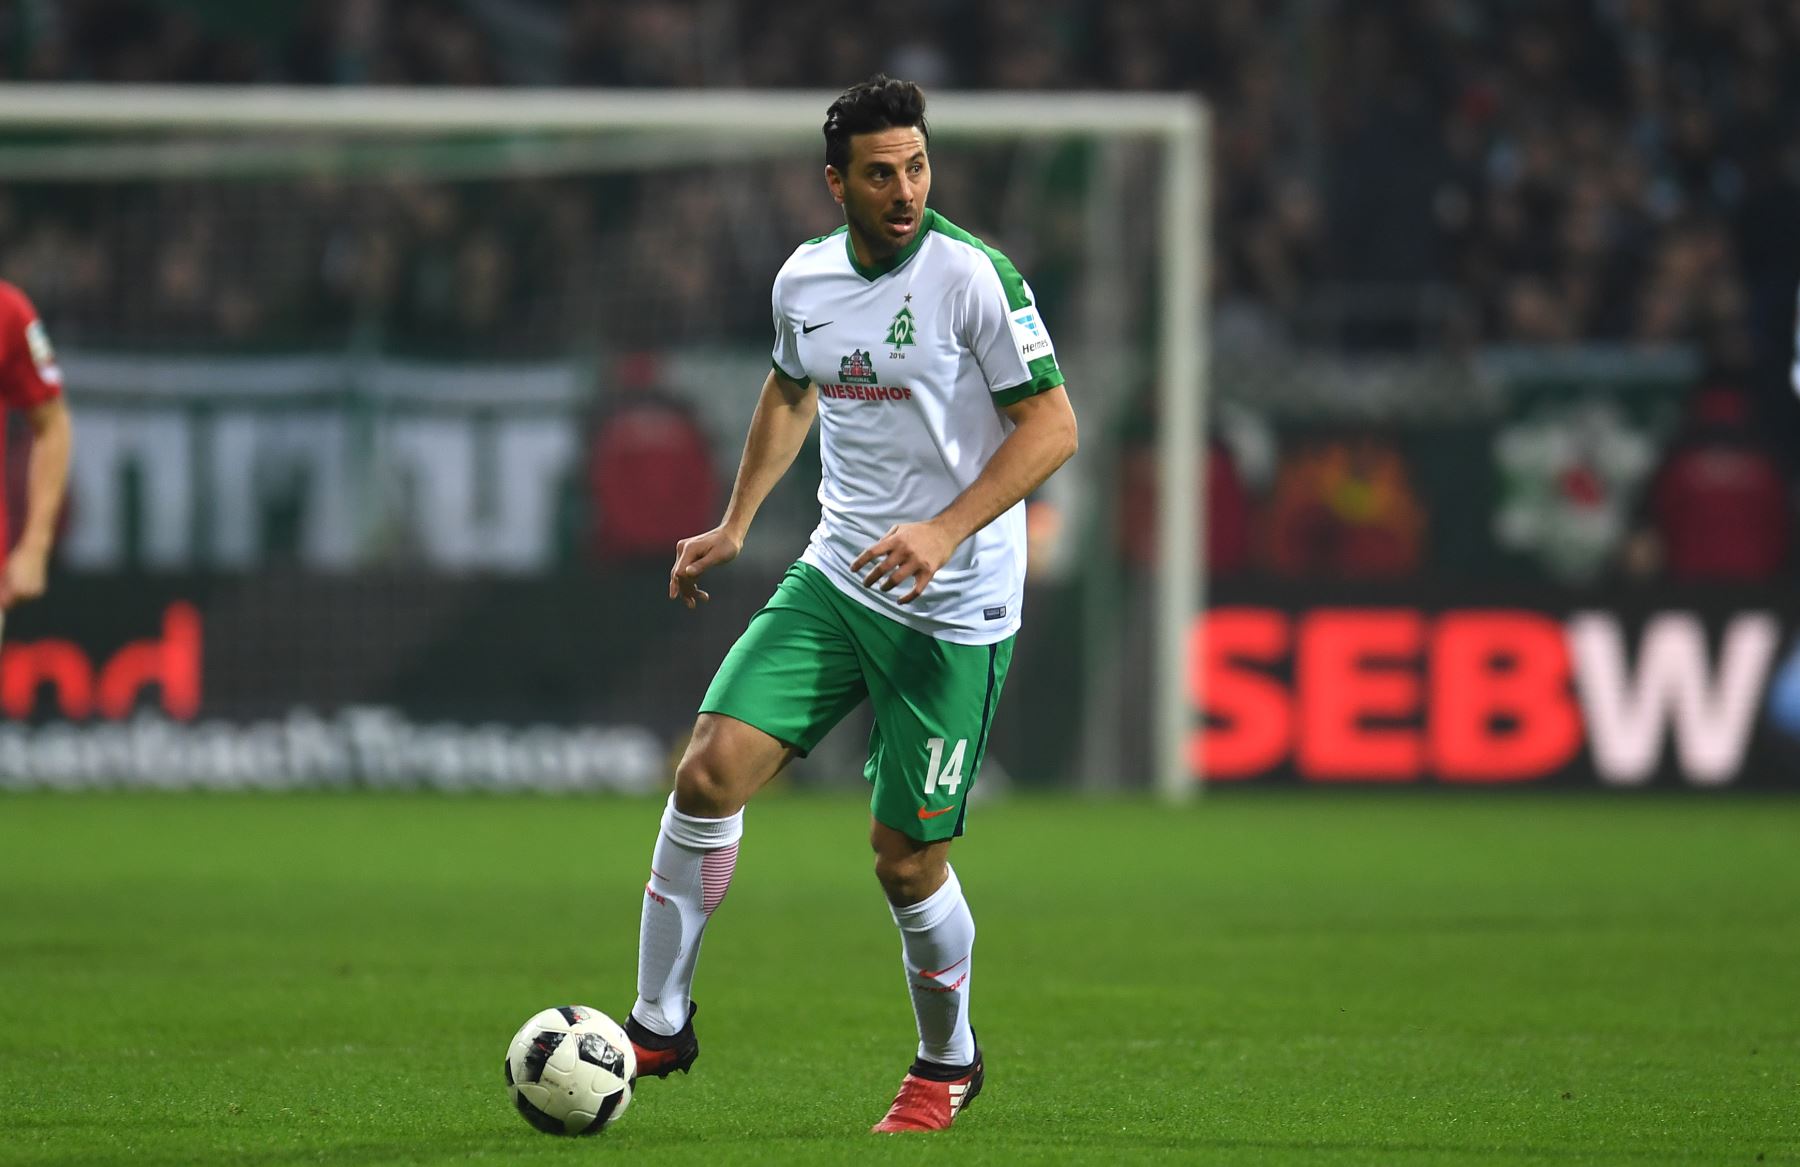 El delantero peruano Claudio Pizarro de Bremen juega la bola durante el partido de fútbol alemán de la Bundesliga de la primera división de Werder Bremen contra 1 FC Colonia Bremen, Alemania septentrional, el 17 de diciembre de 2016.
Foto:AFP